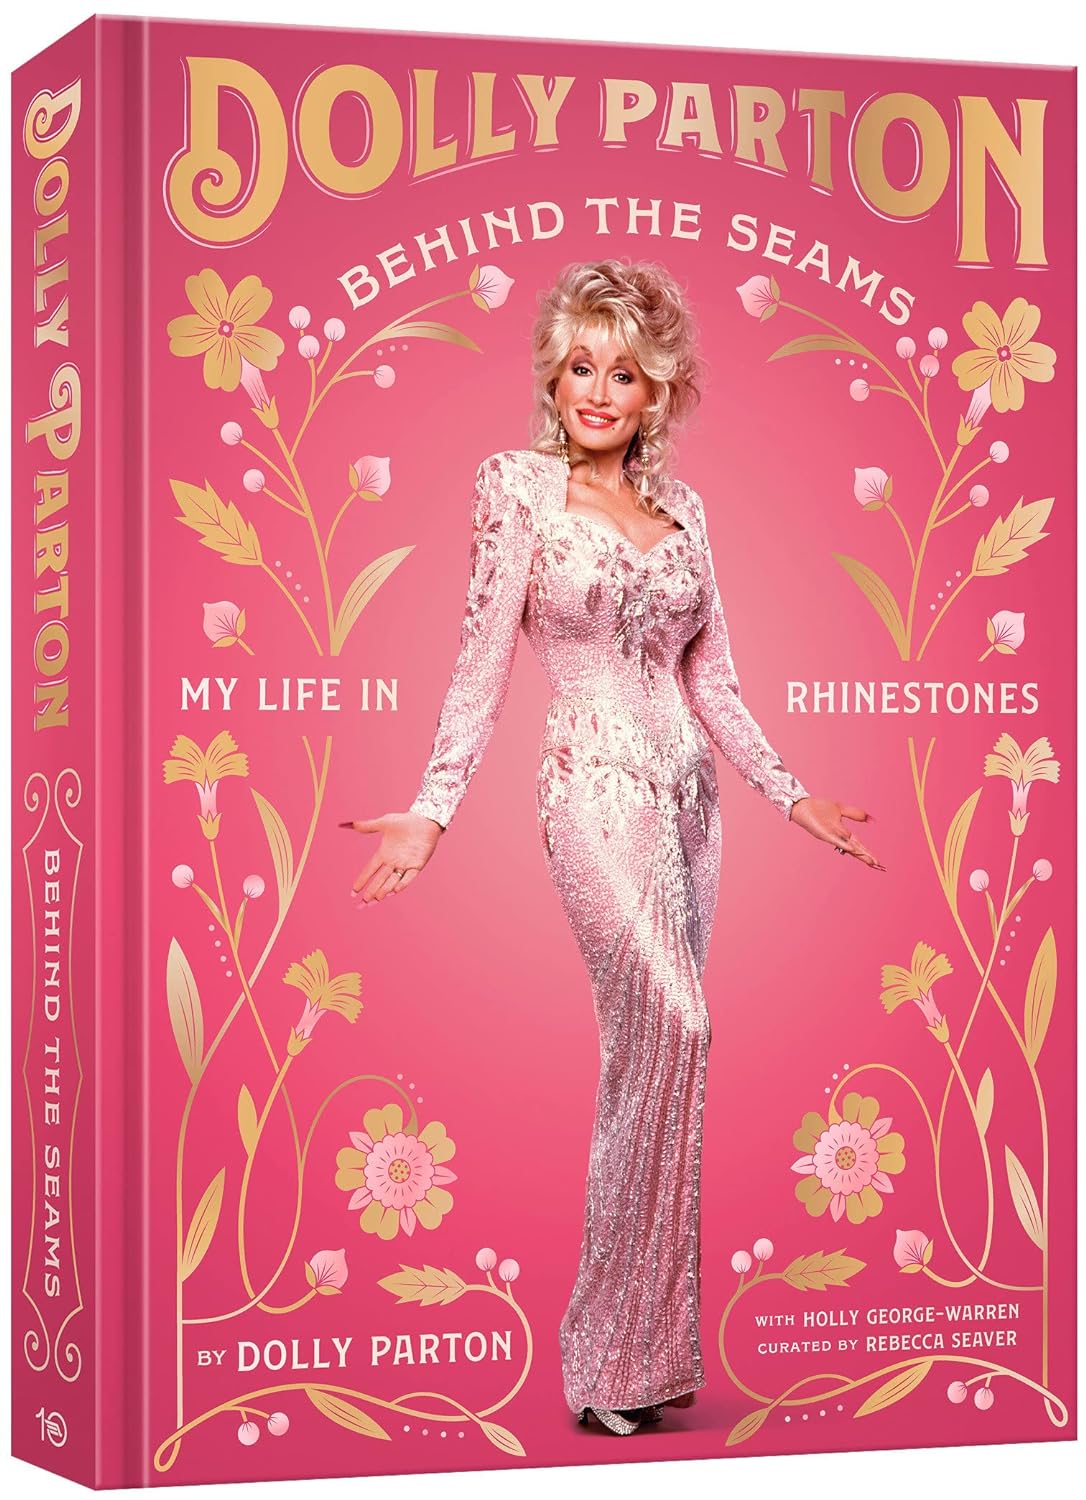 Dolly Parton- Behind the Seams: My Life in Rhinestones